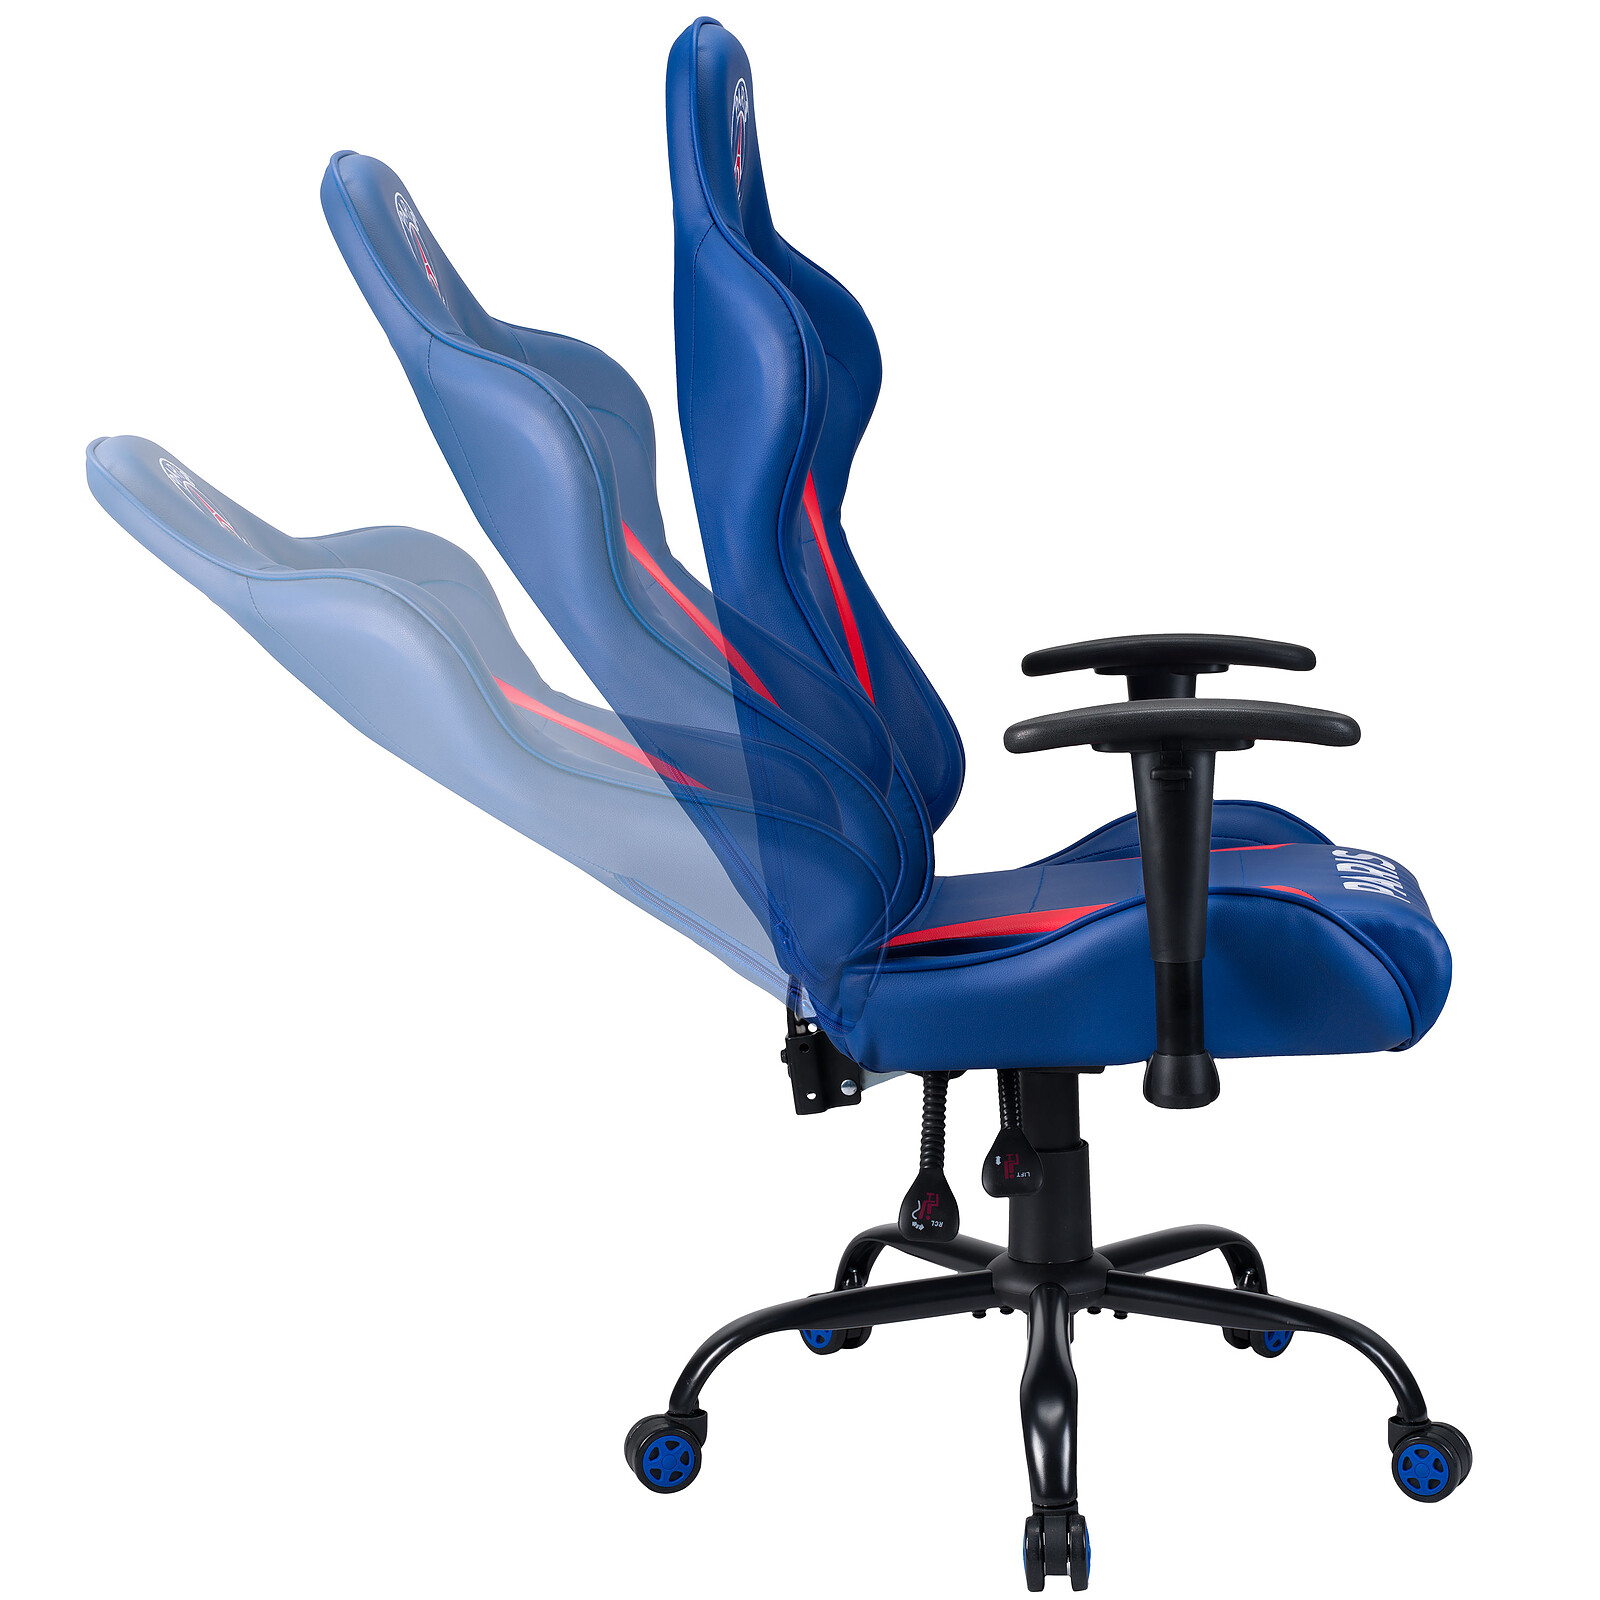 Chaise gaming : remise exceptionnelle sur les fameux fauteuils Interlink  que les gamers s'arrachent